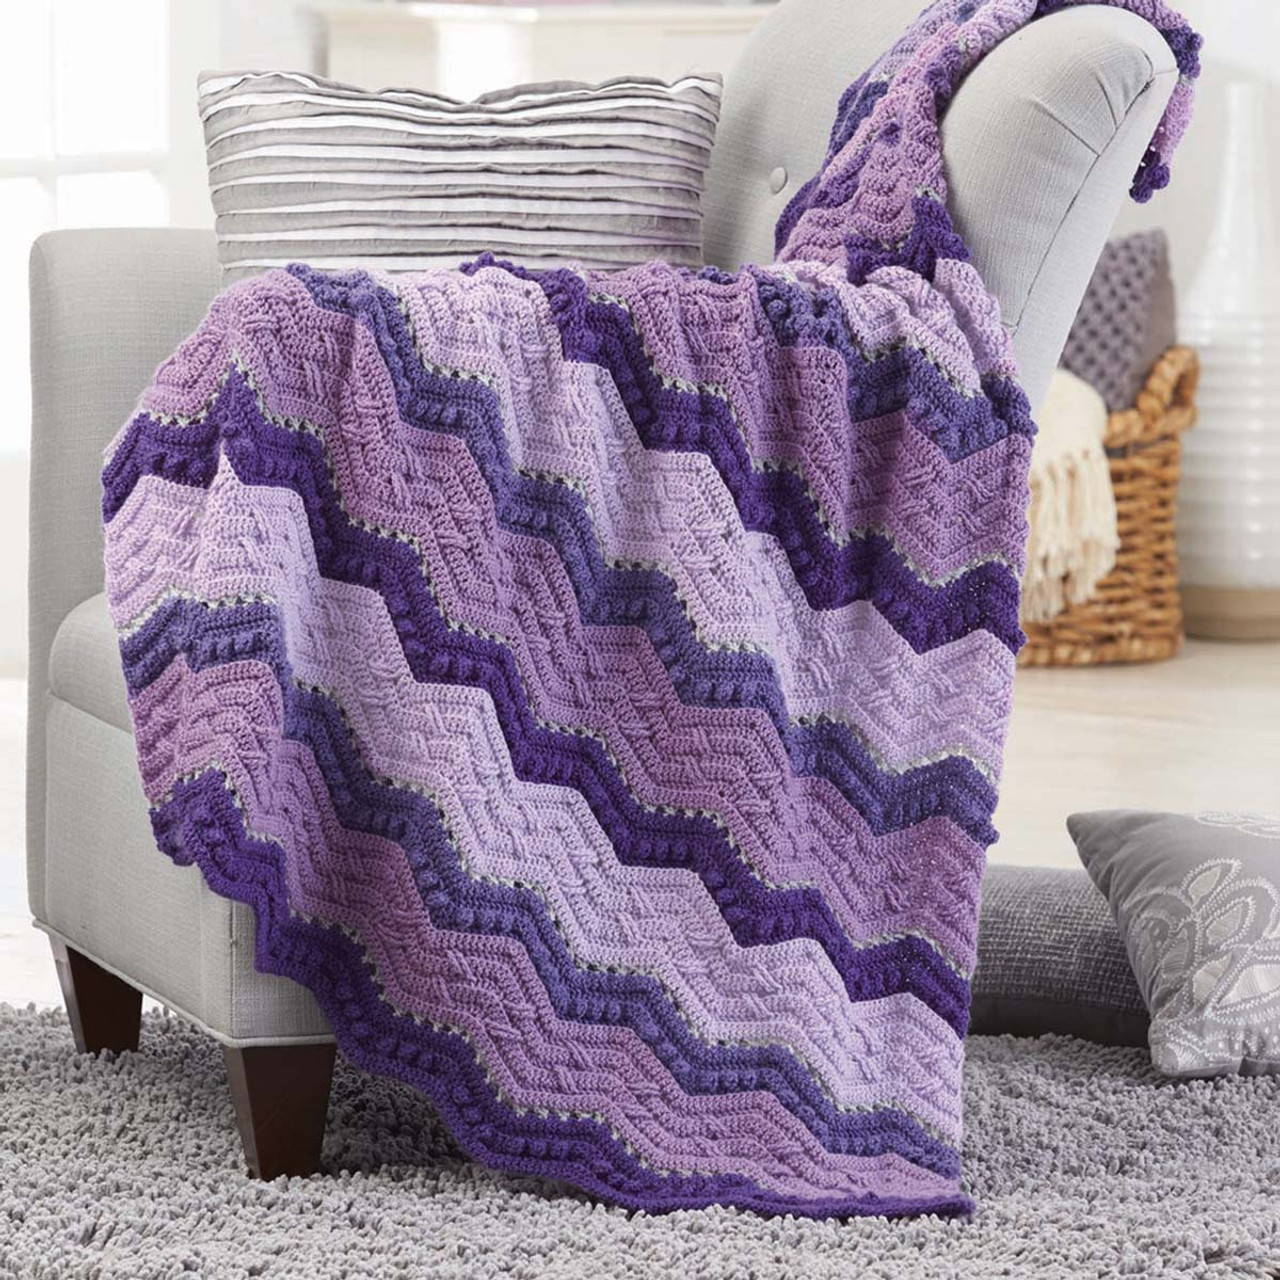 Herrschners Lavender & Lilac Crochet Afghan Kit